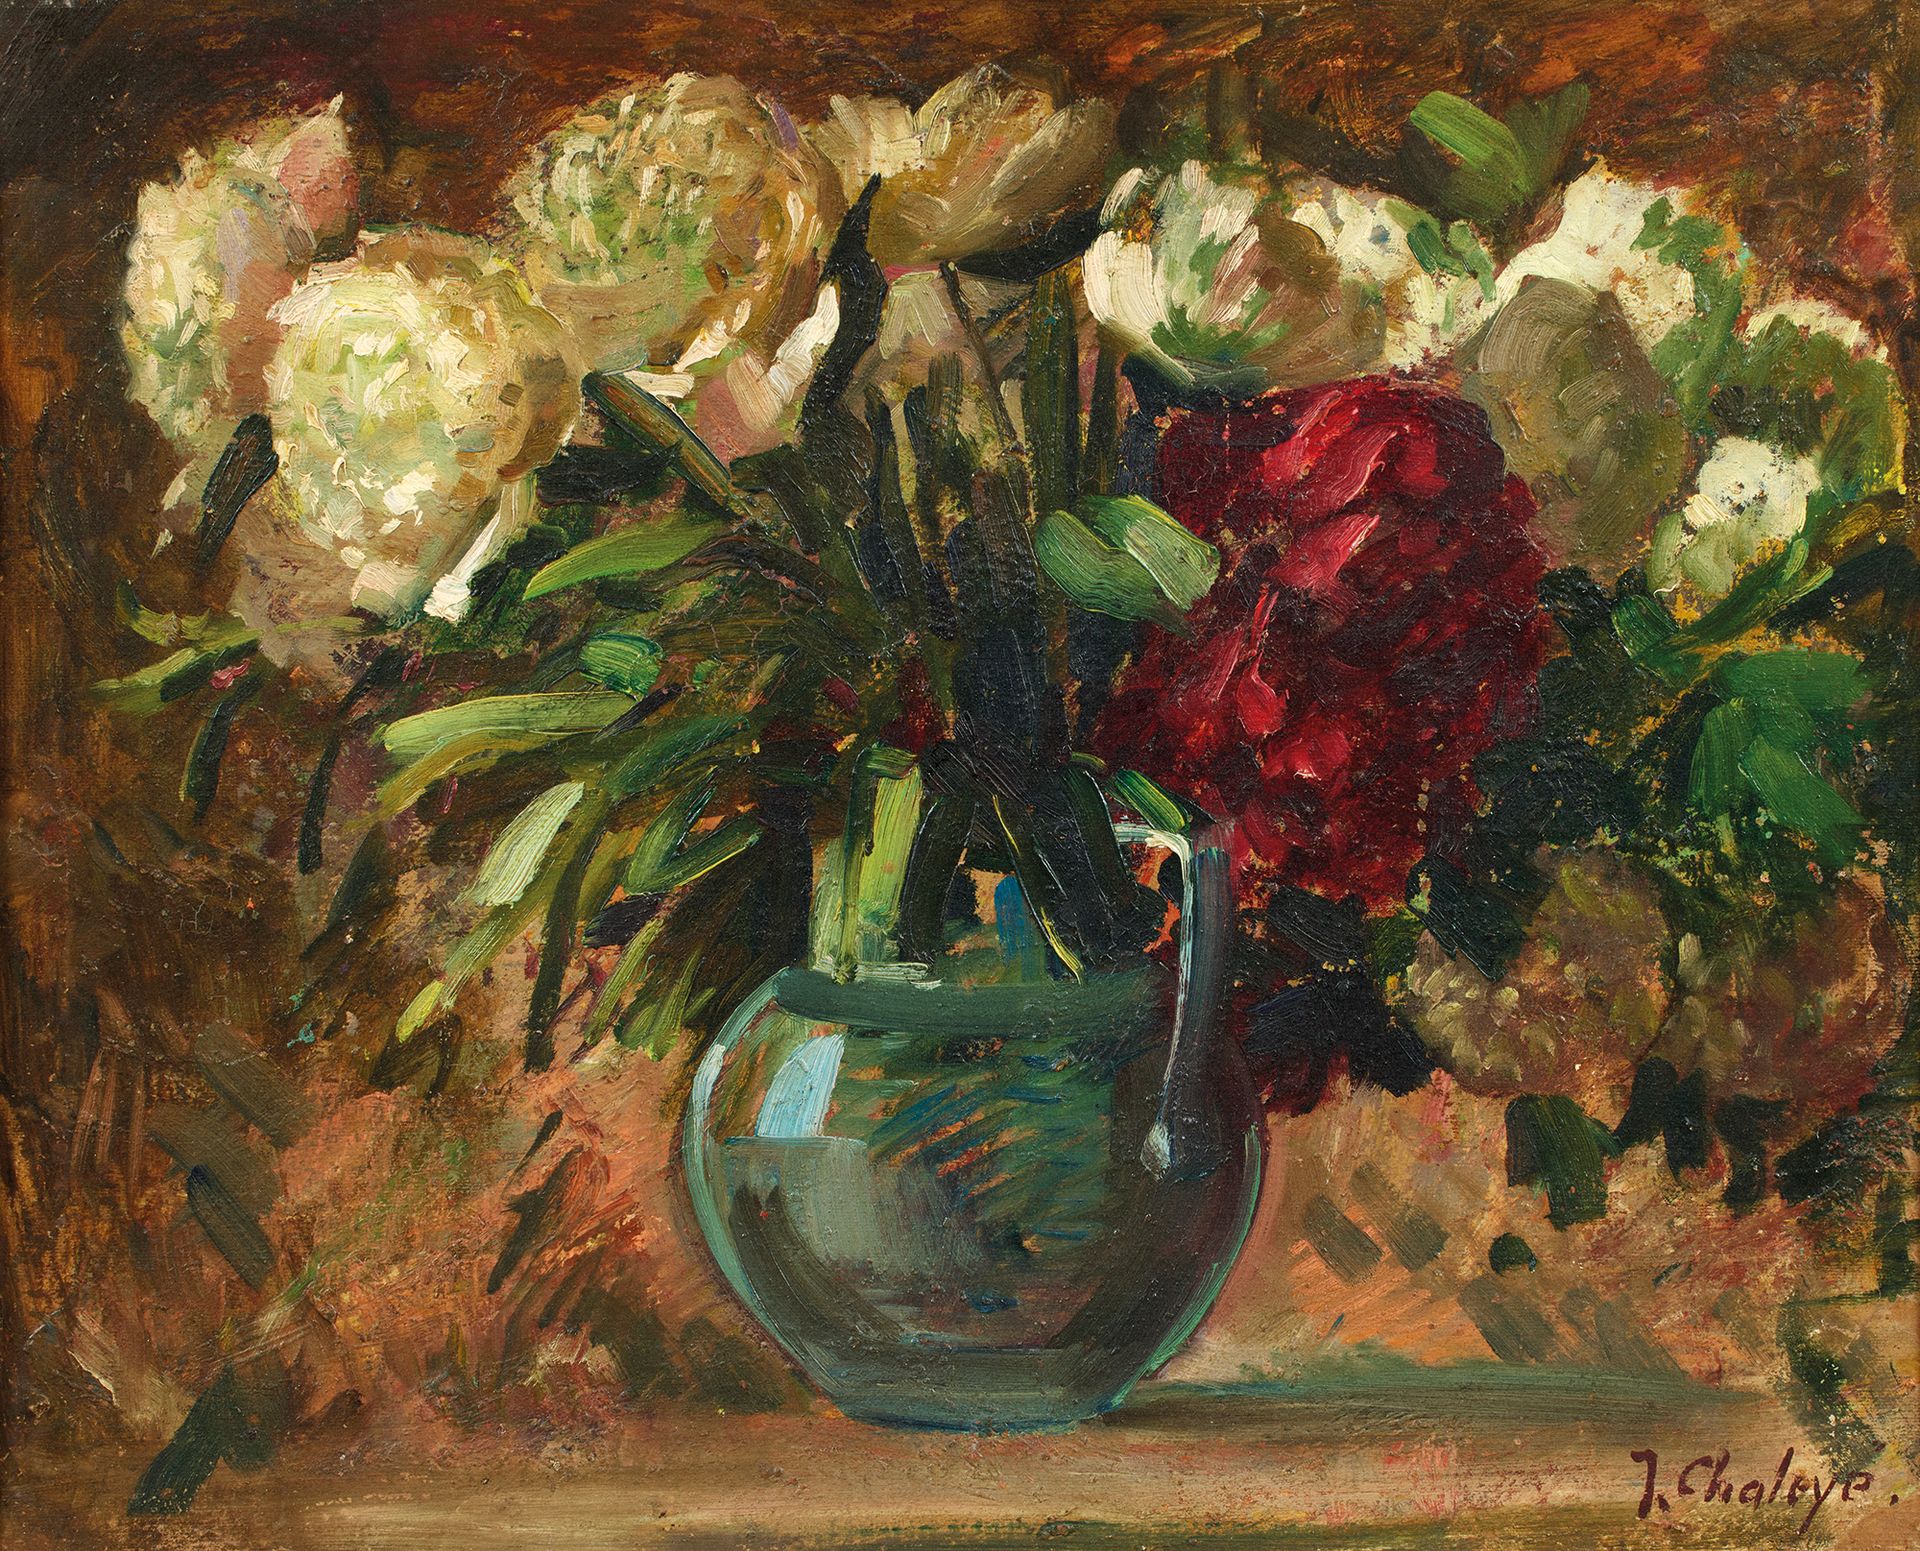 Jean CHALEYÉ (1878-1960) 让-夏莱耶 (1878-1960)
牡丹花瓶
右下角有签名的伊索尔上的油画
50 x 61厘米 
(小缺)